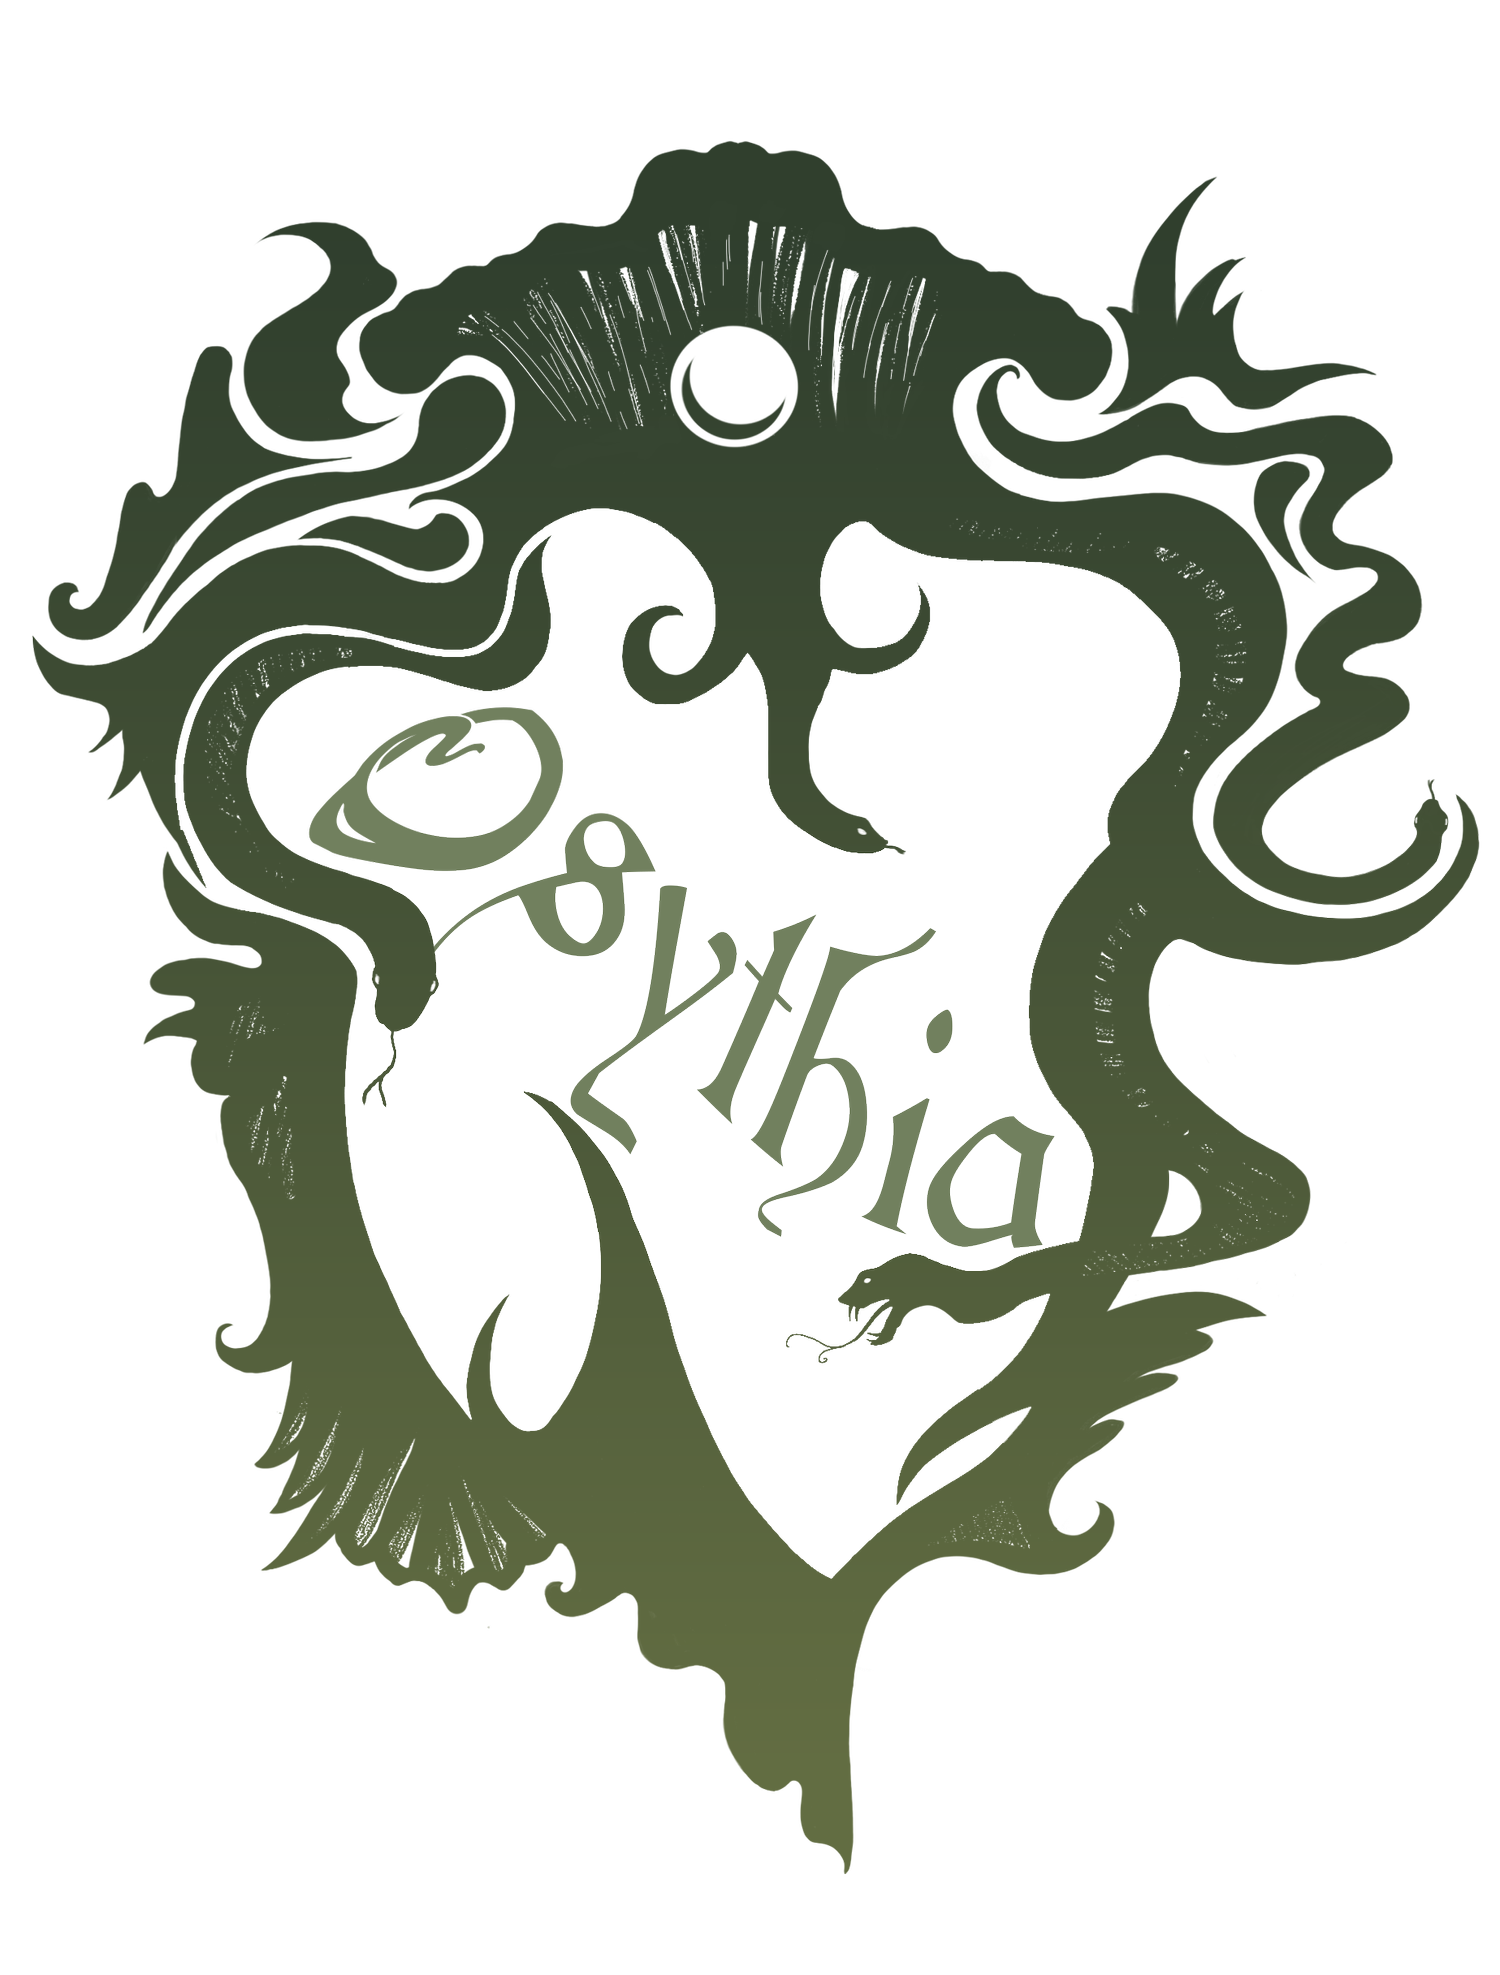 Osythia